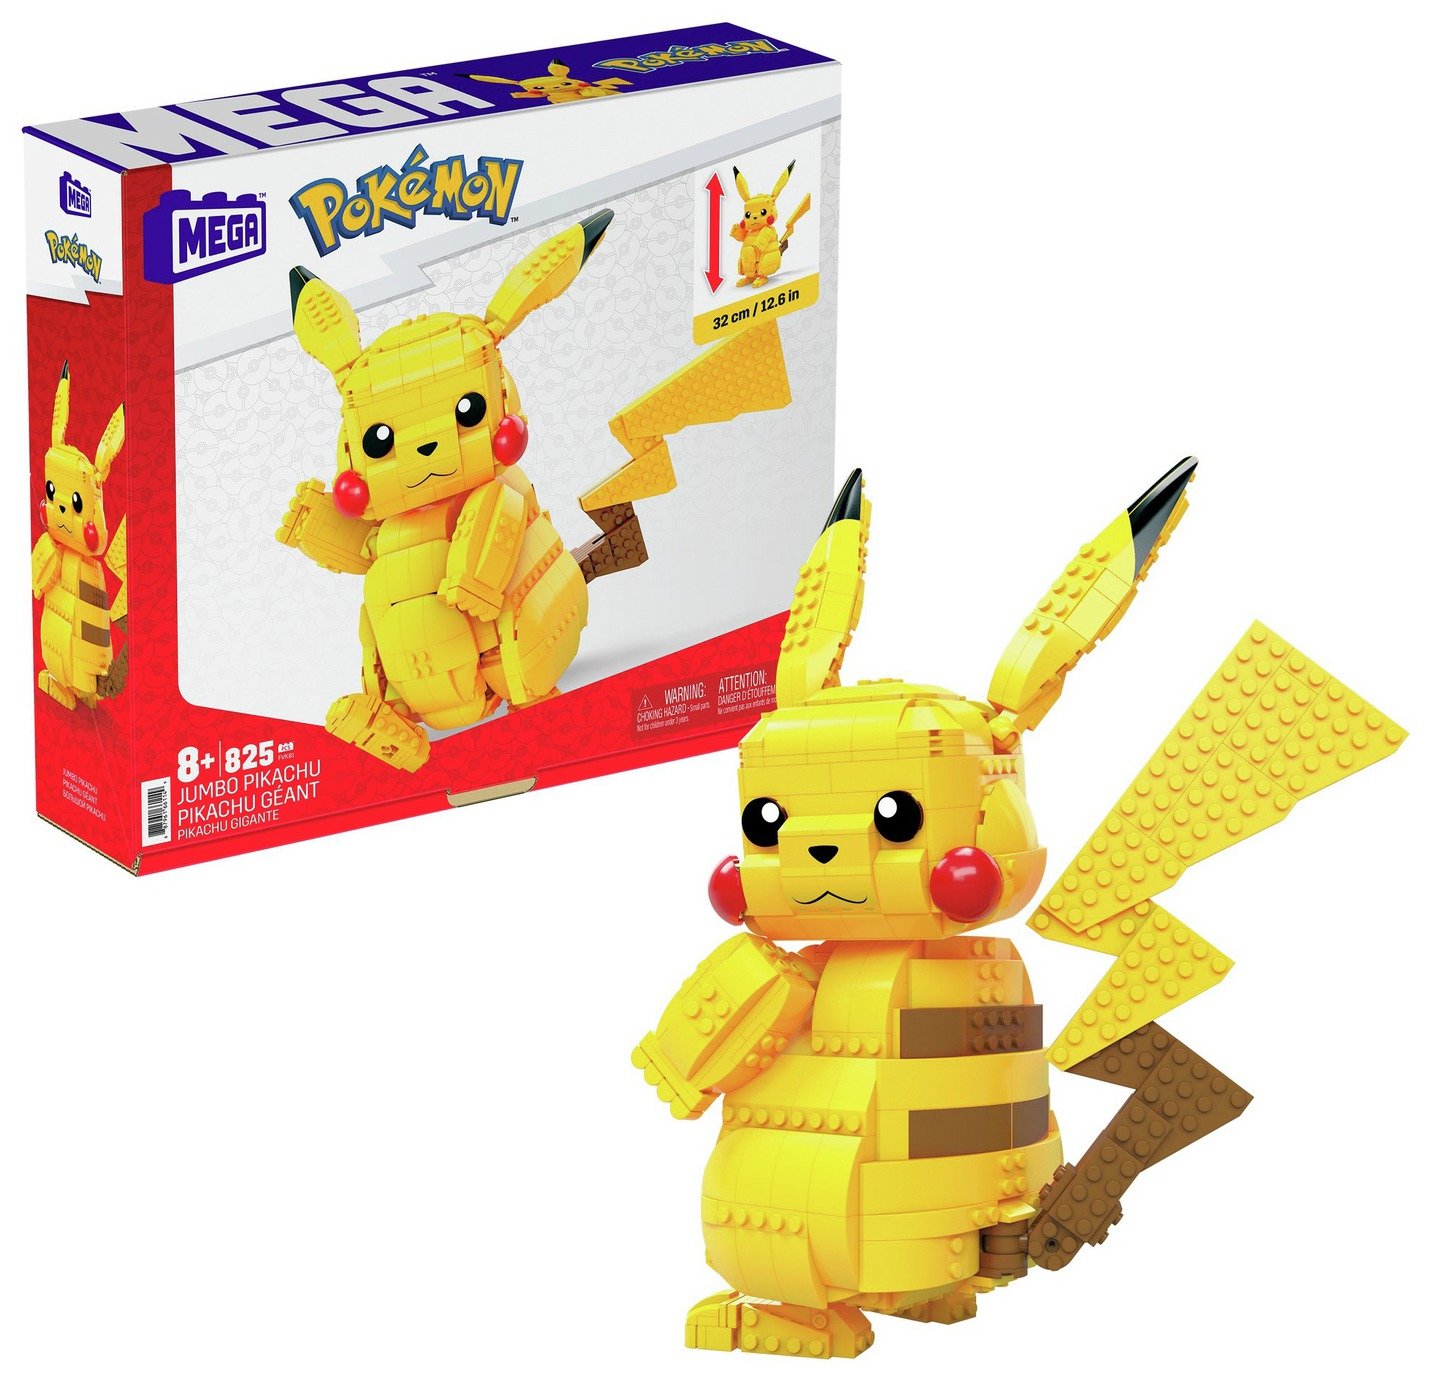 Mega Pokémon Jumbo Pikachu Building Set.